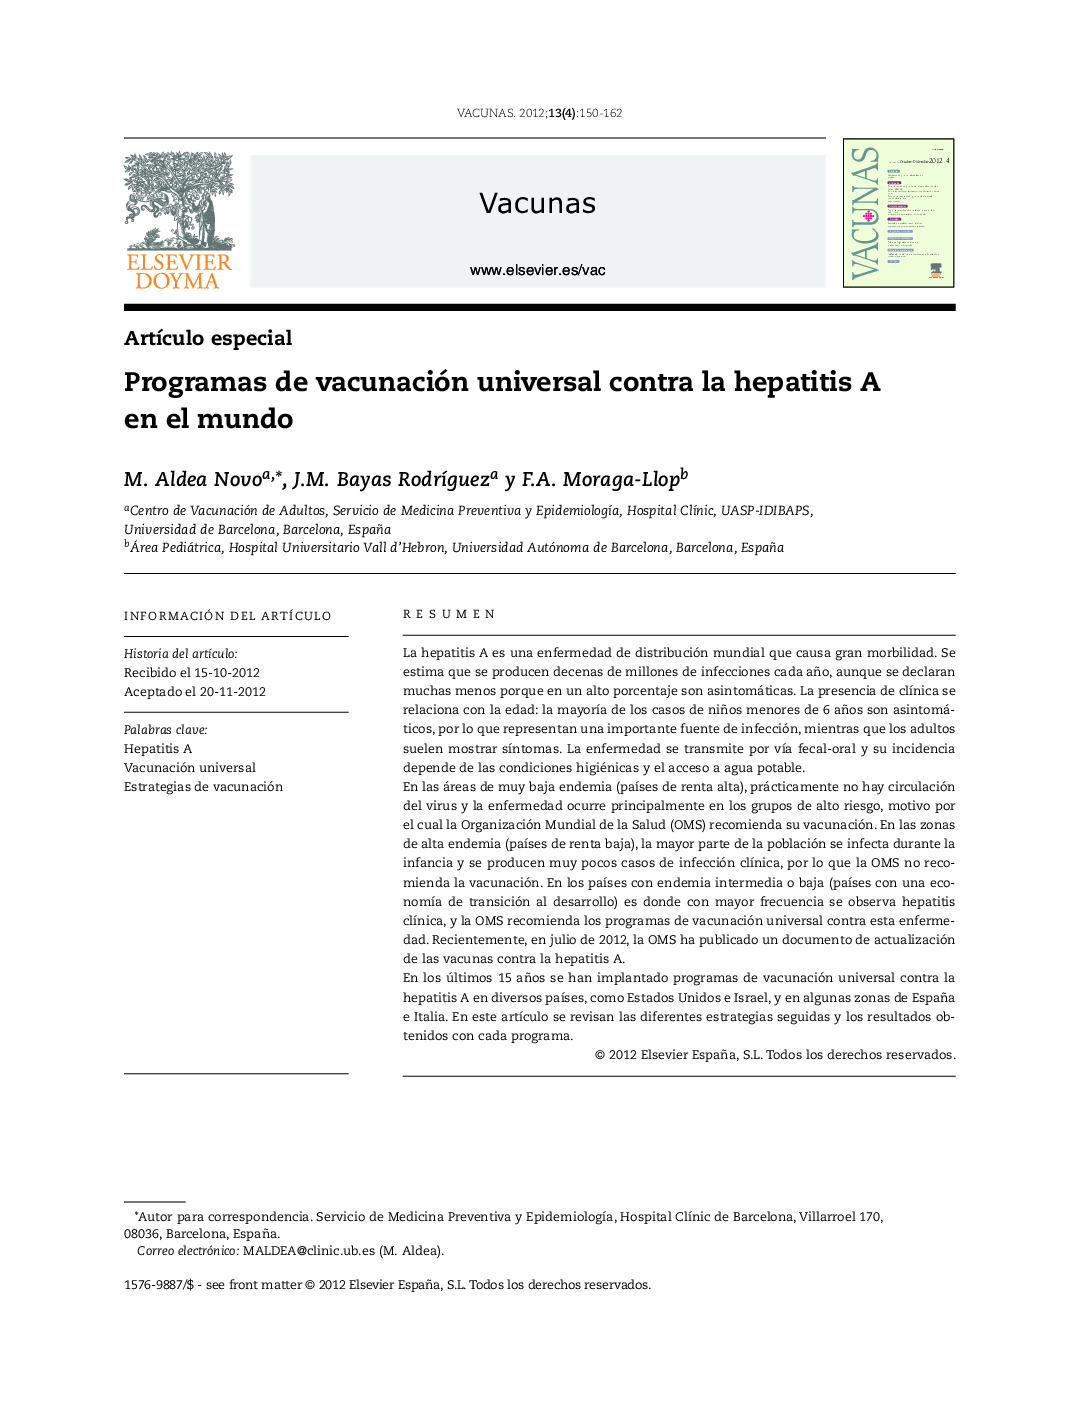 Programas de vacunación universal contra la hepatitis A en el mundo